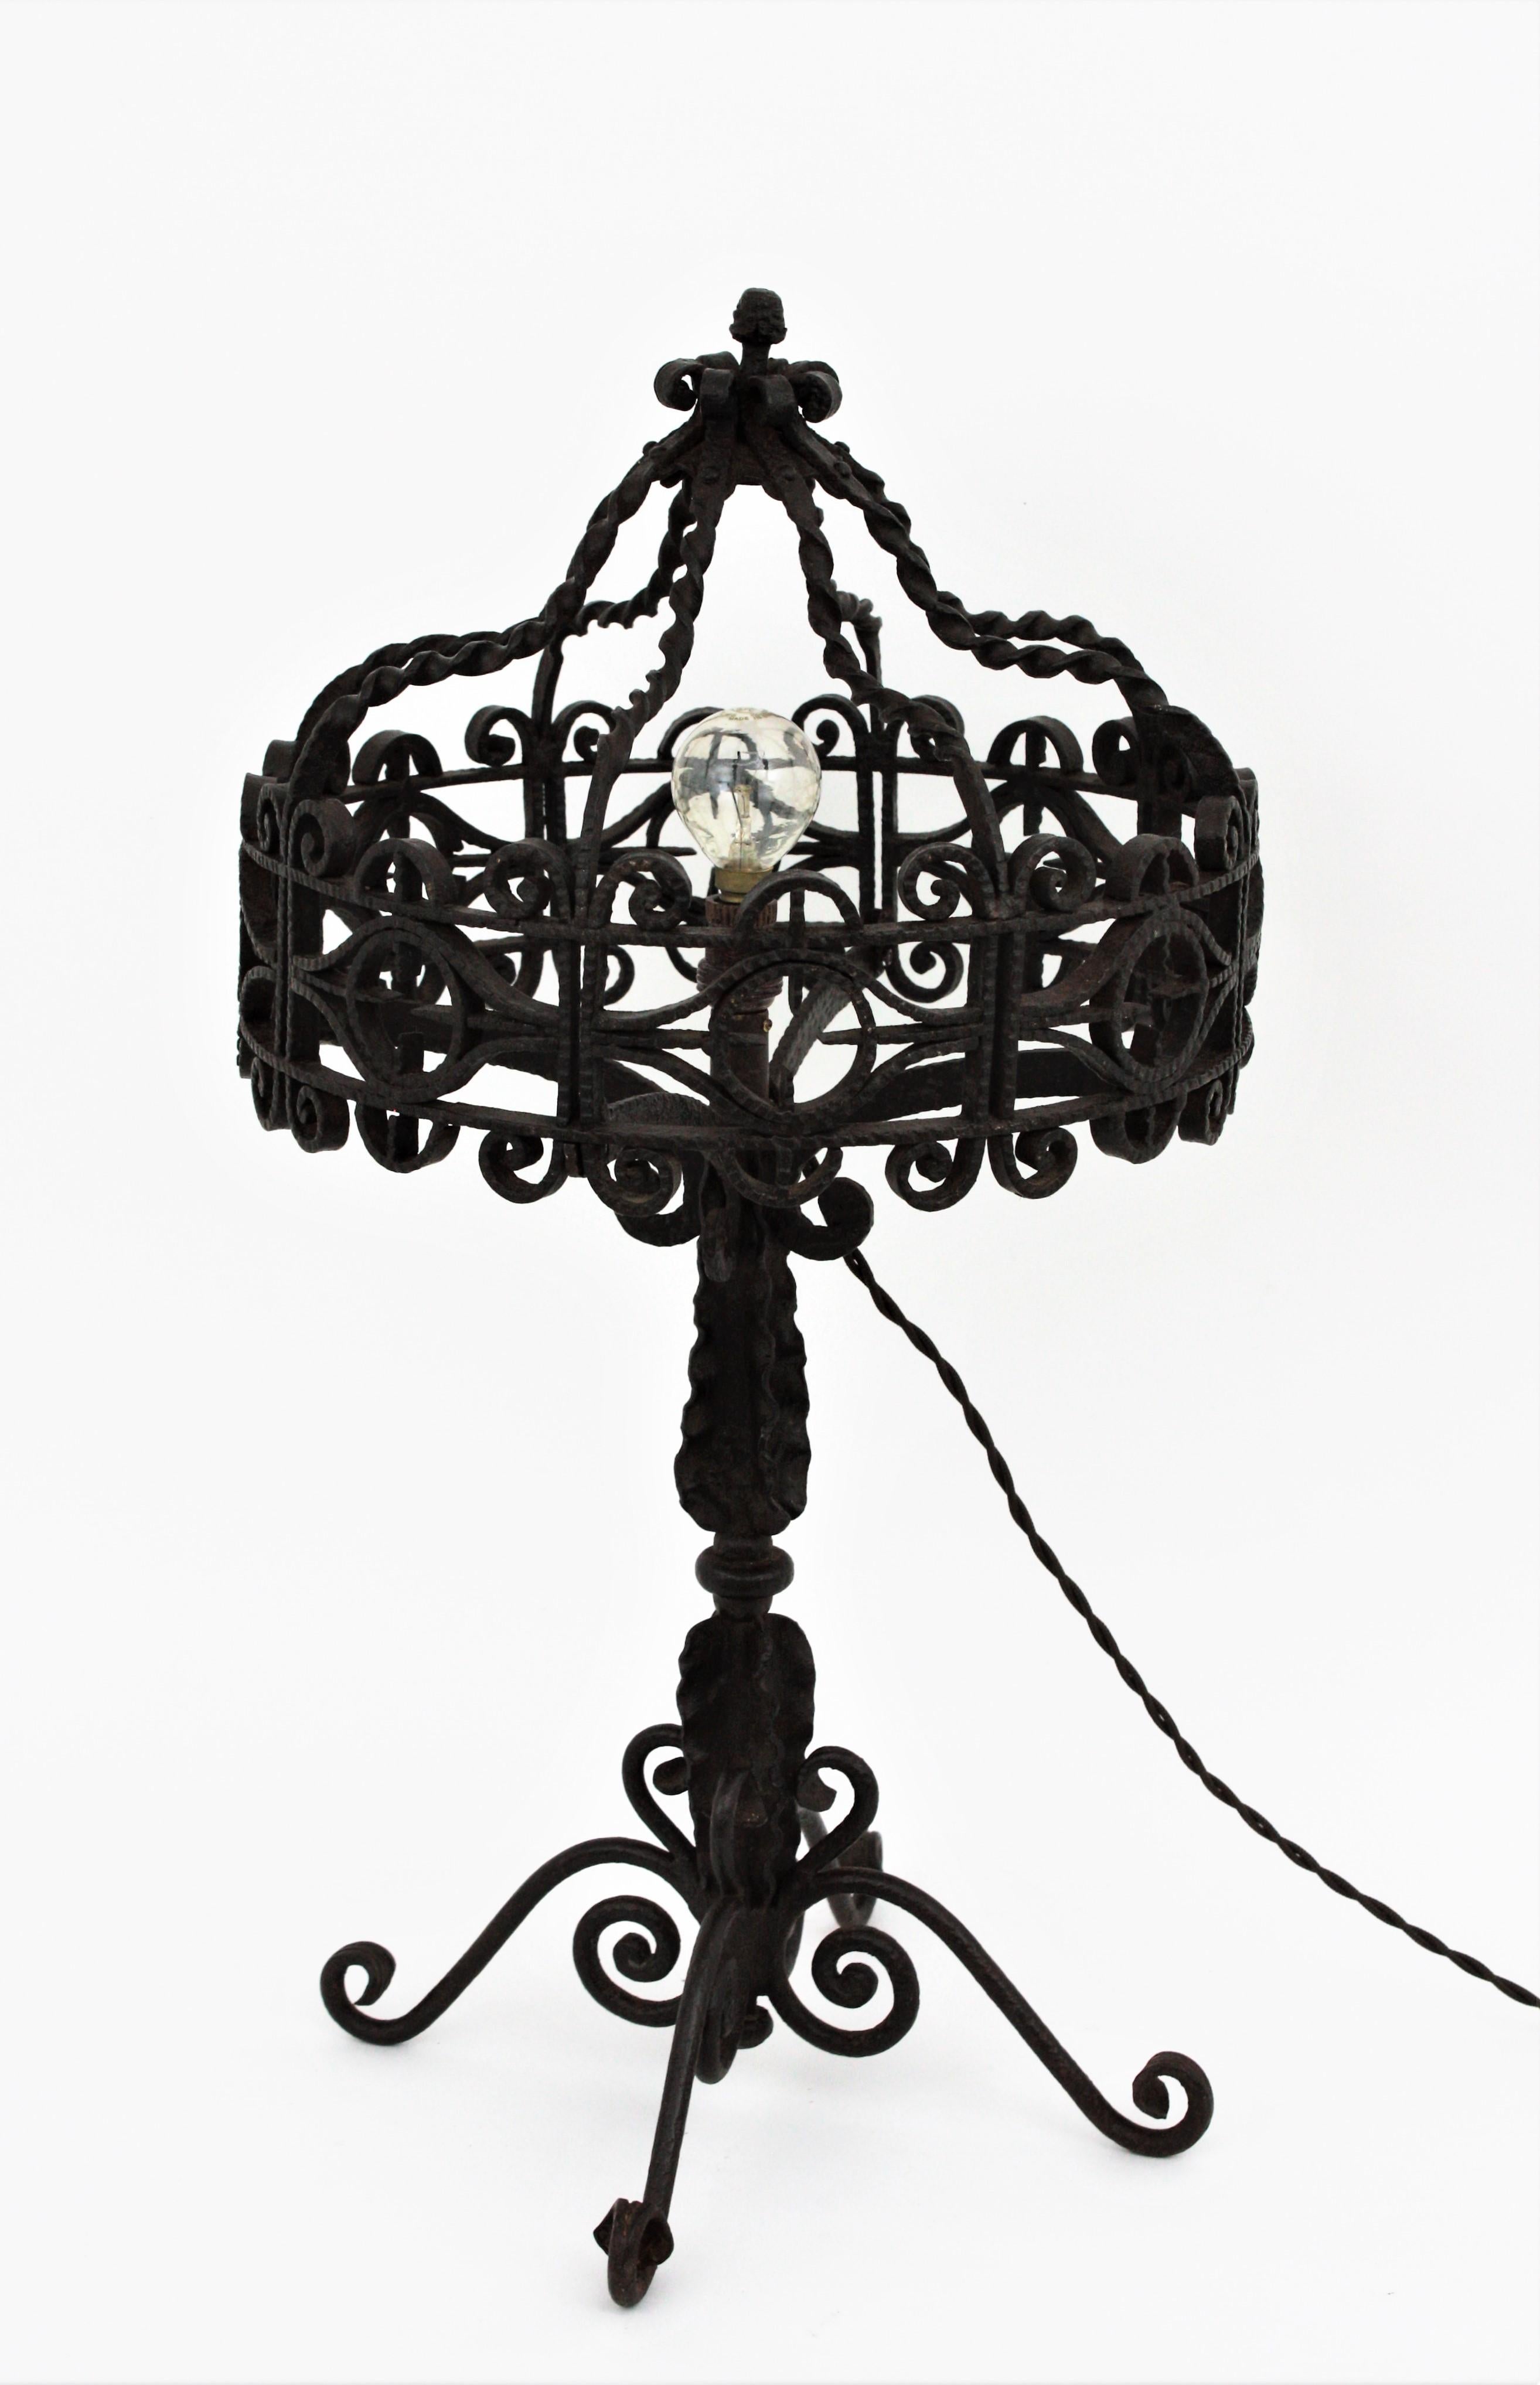 Wunderschöne spanische Tischlampe aus Schmiedeeisen im Stil der Gotik
Diese Tischlampe aus handgeschmiedetem Eisen hat eine atemberaubende handgefertigte Arbeit mit verschnörkelten Details und verdrehten Ornamenten durch.
Sie wird überall dort, wo